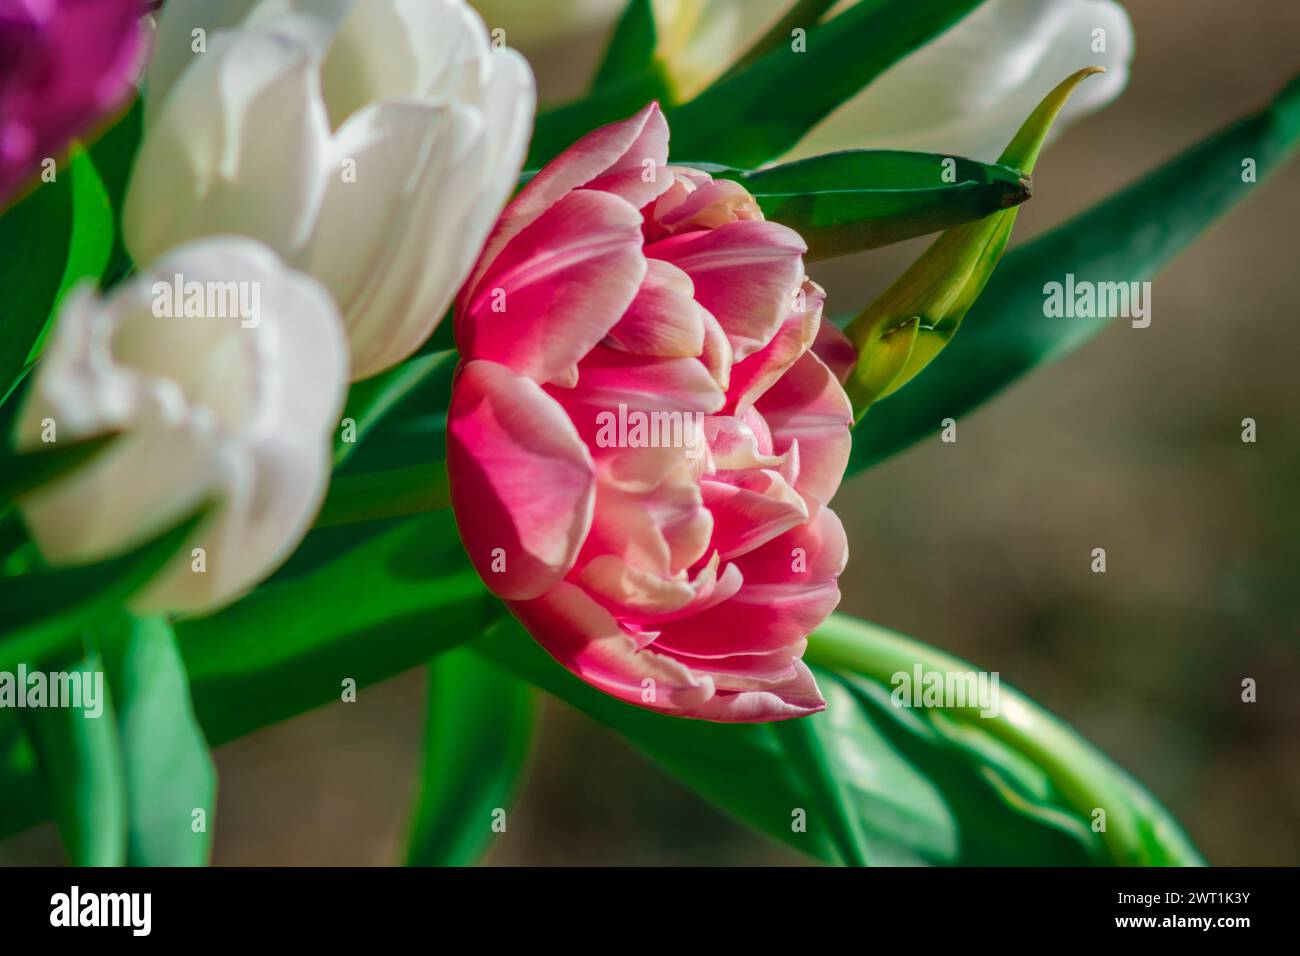 Sotto lo sguardo amorevole del sole, i tulipani fioriscono di una bellezza eterea, a testimonianza della resilienza della vita Foto Stock